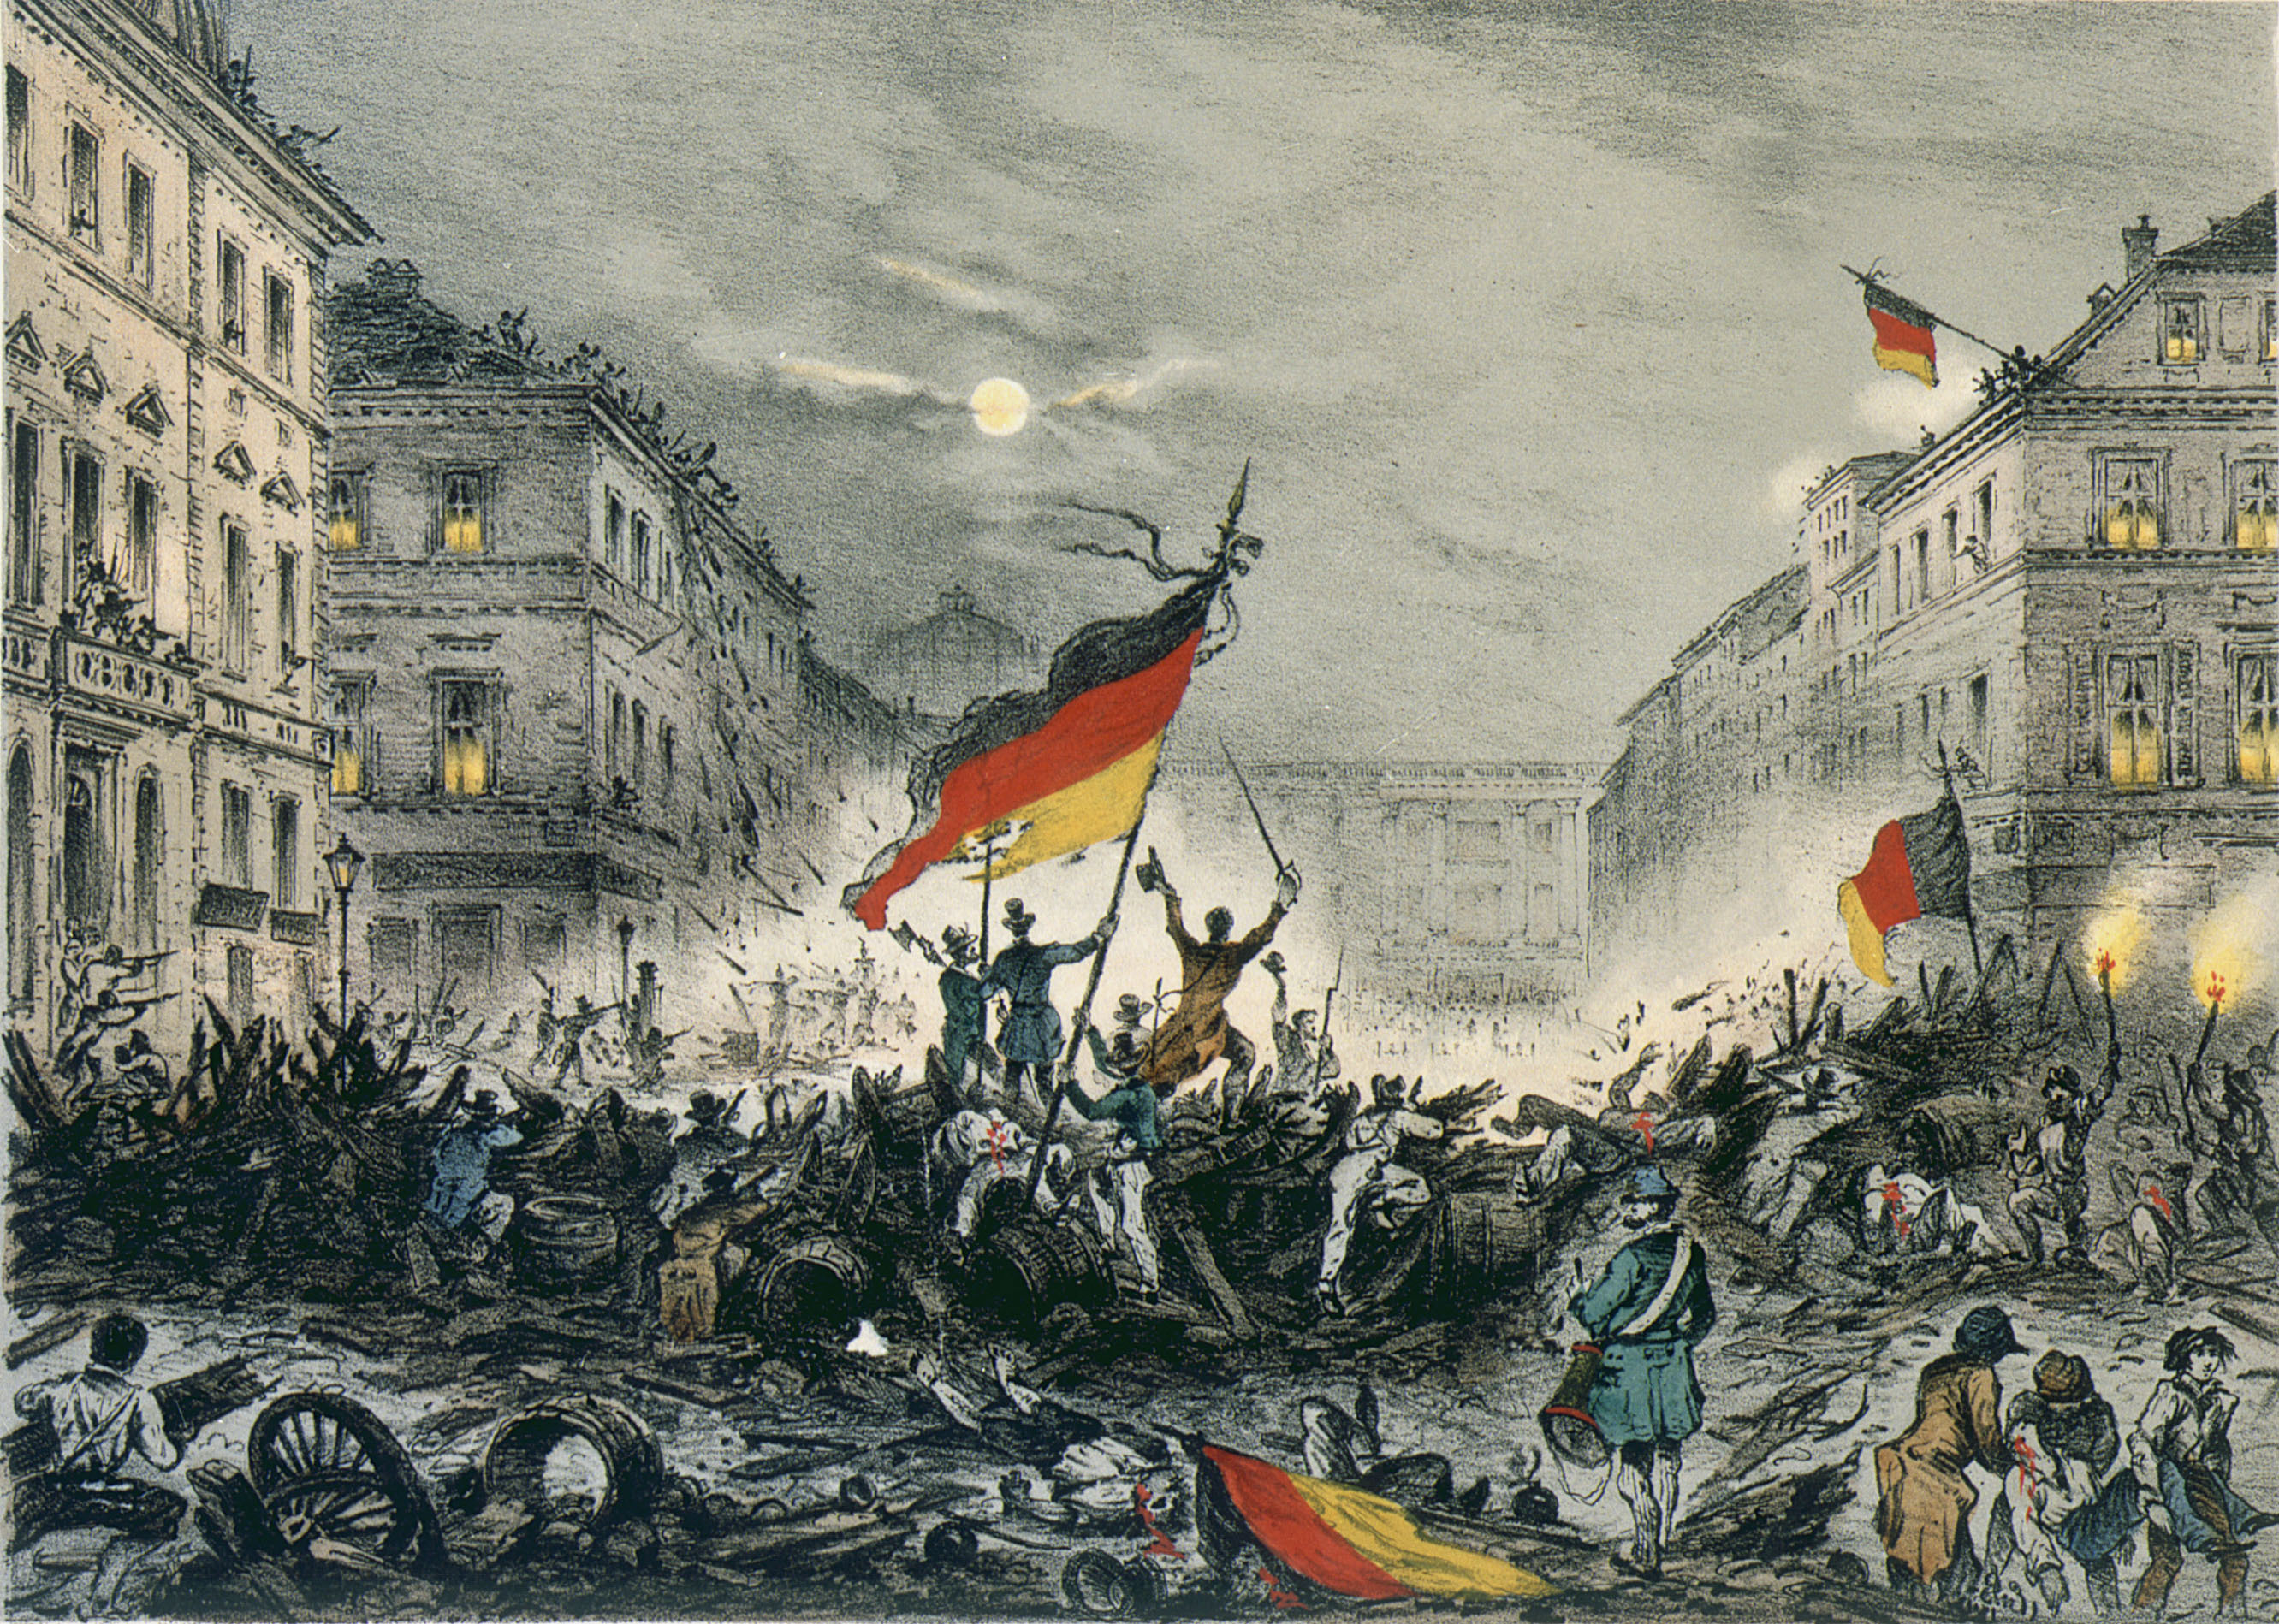  Straßenkämpfe in Berlin am 18./19. März 1848: "Erinnerung an den Befreiungskampf in der verhängnisvollen Nacht vom 18. /19. März 1848"